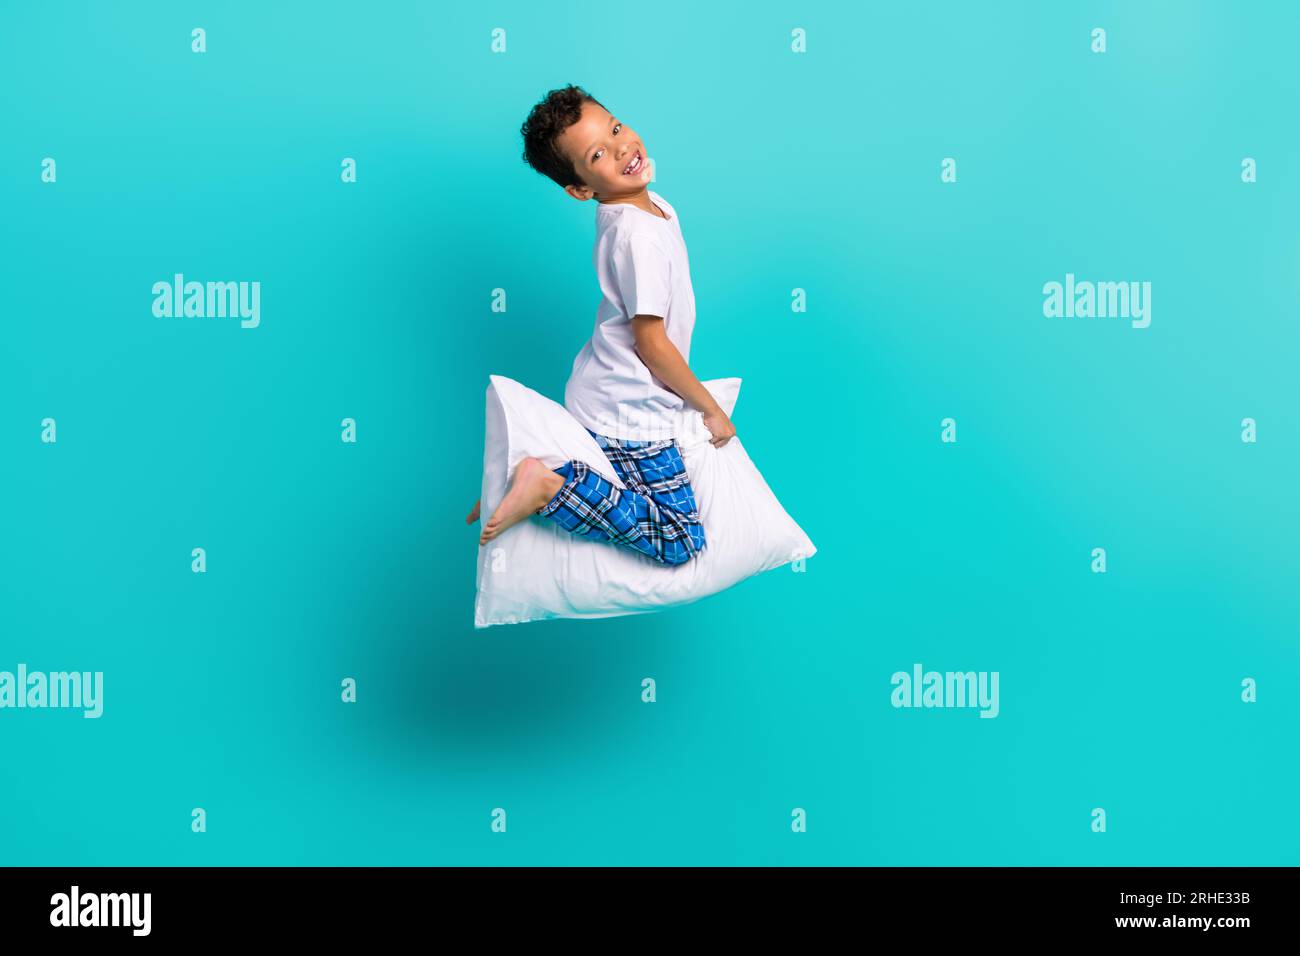 Ganzkörperfoto des kleinen energiegeladenen fröhlichen Jungen, der fliegendes Kissen auf blauem Hintergrund springt Stockfoto